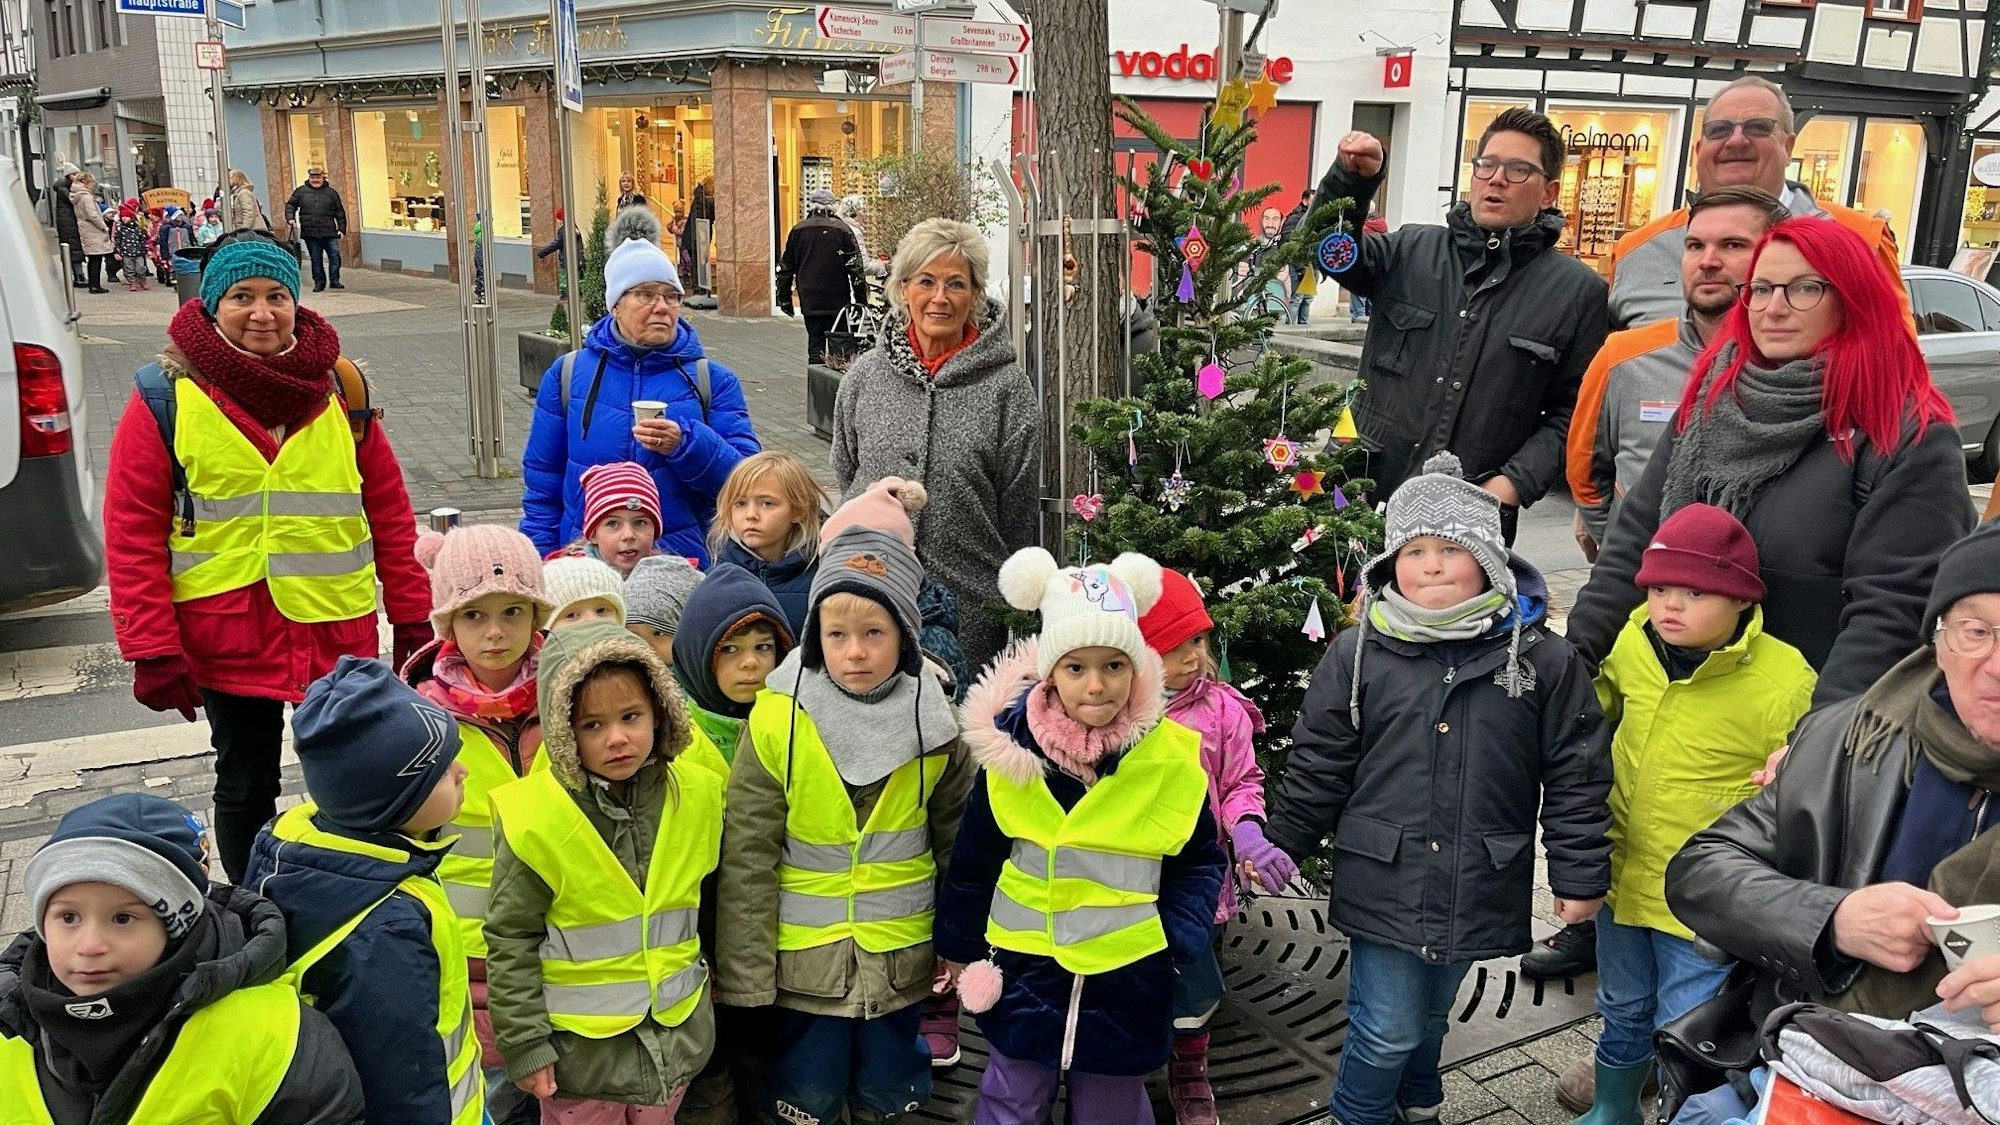 Vor einem geschmückten Weihnachtsbaum in der Rheinbacher Innenstadt stehen ein Dutzend Kinder mit Warnwesten und einige Erwachsene.